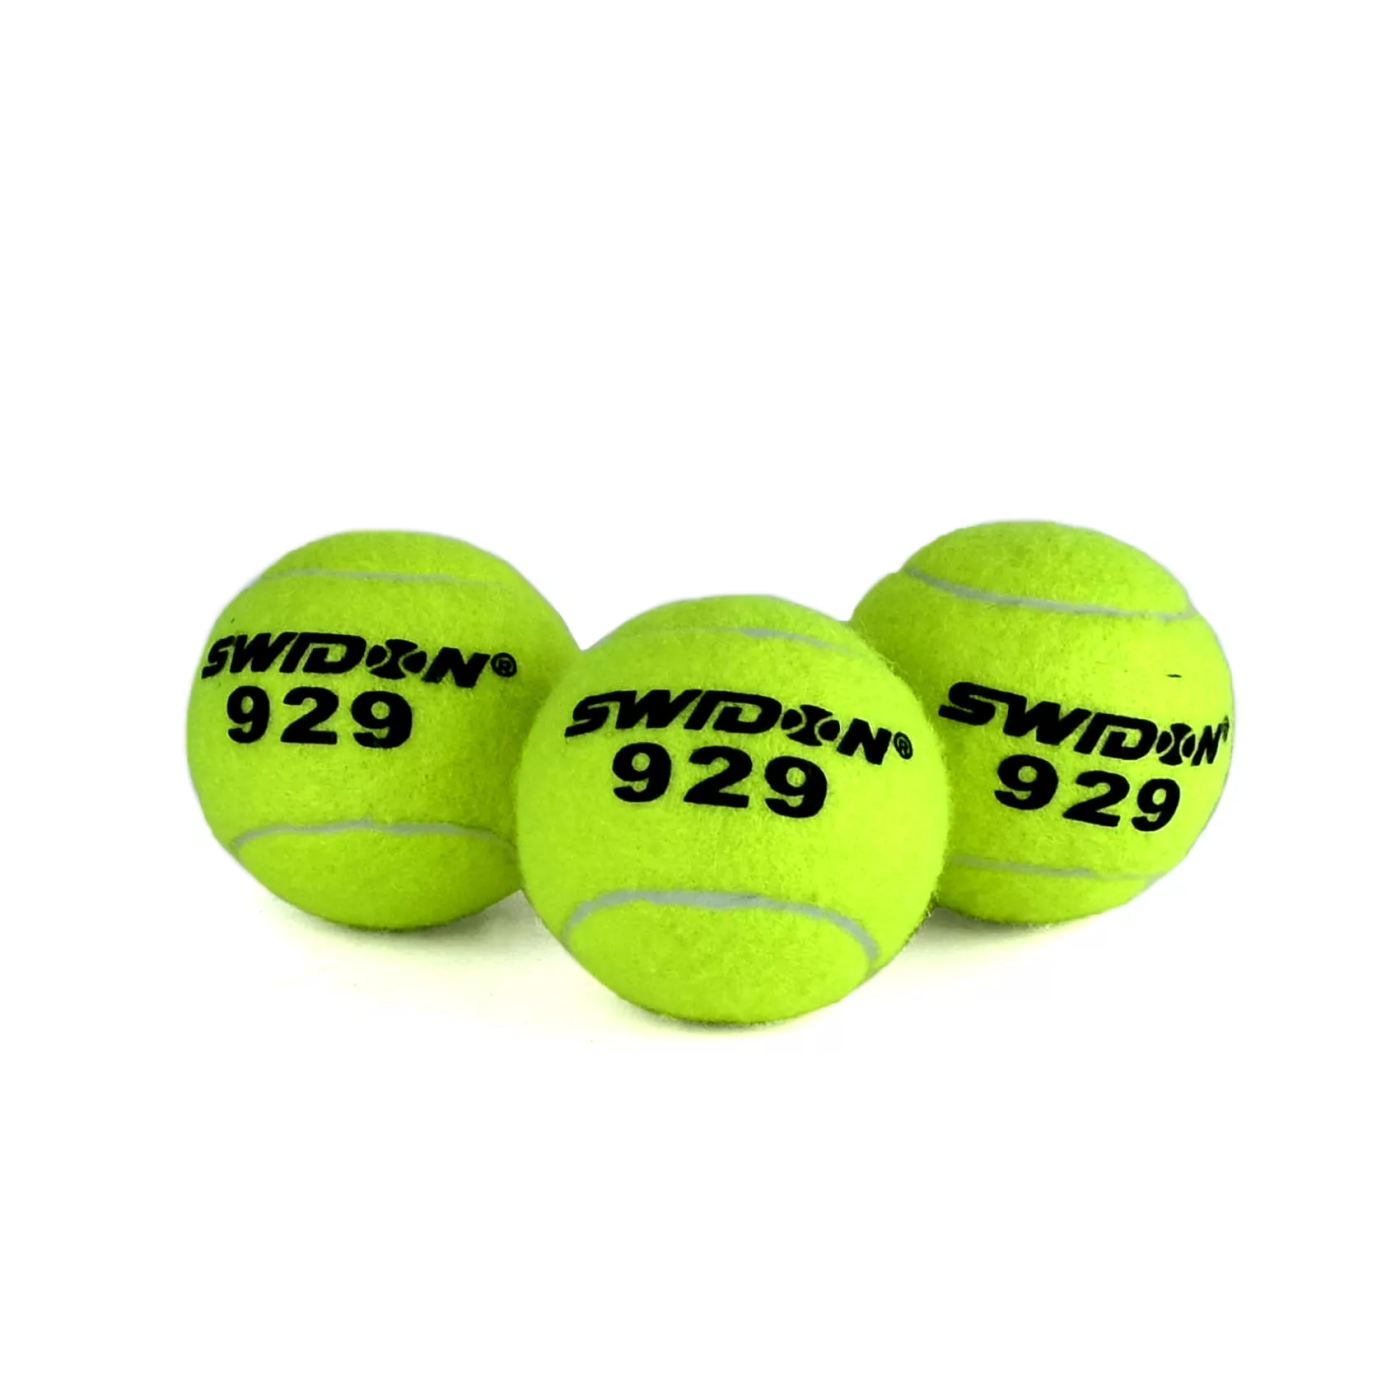 Фото Мяч для тенниса Swidon 929 (3 штуки в тубе) 929 со склада магазина СпортСЕ